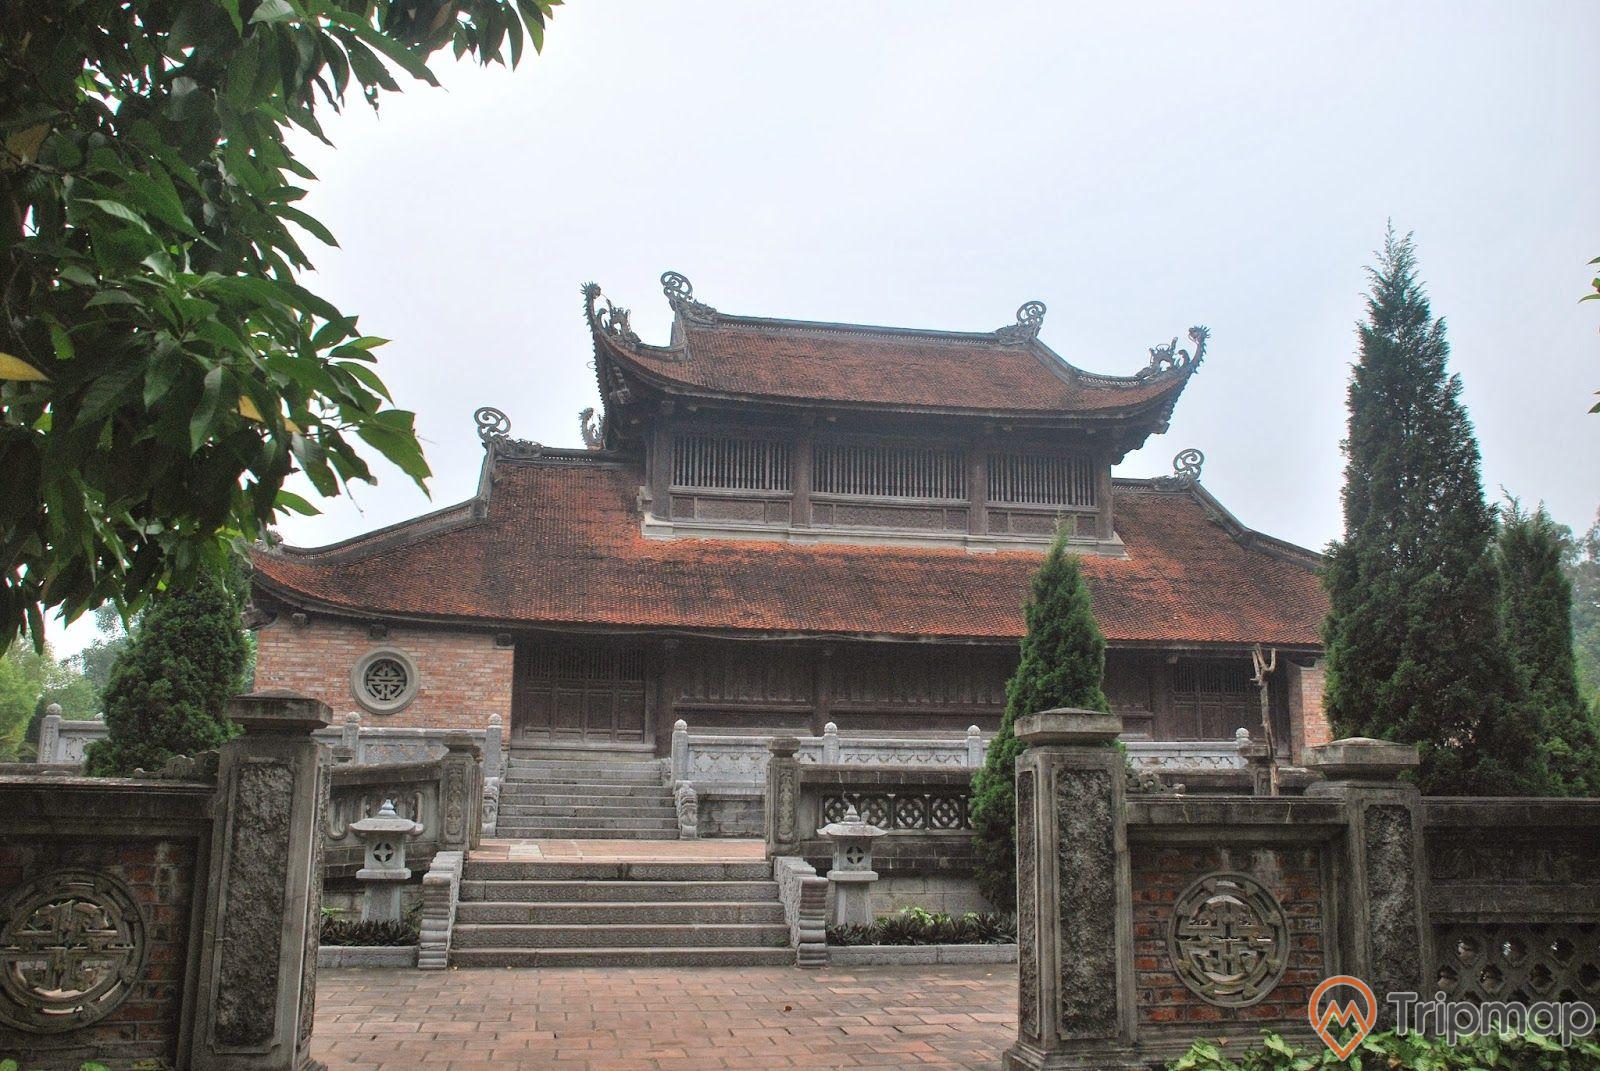 ngôi nhà của vua thời xưa, khung cảnh lâu đời thời Nguyễn